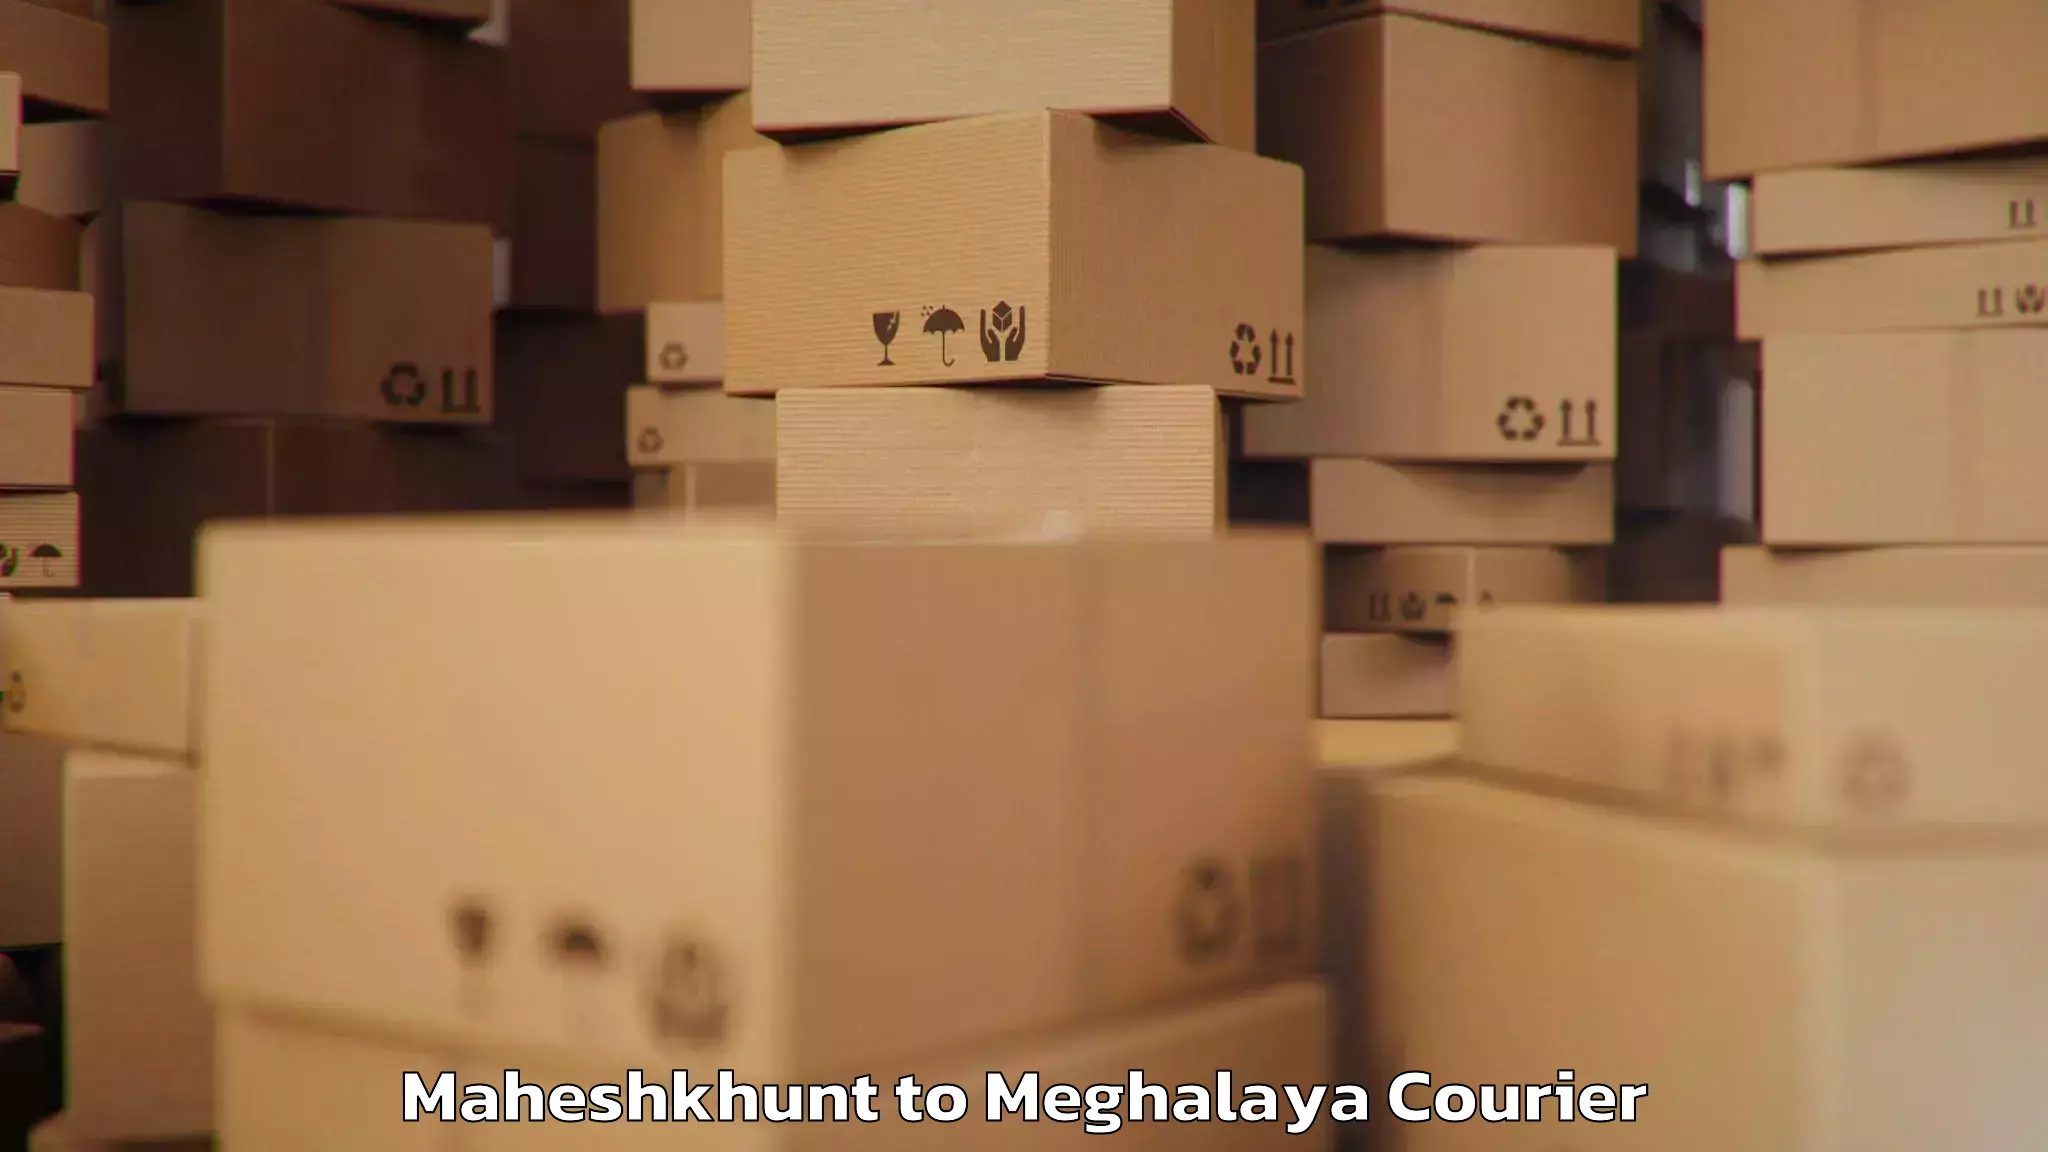 Luggage shipping specialists Maheshkhunt to Meghalaya